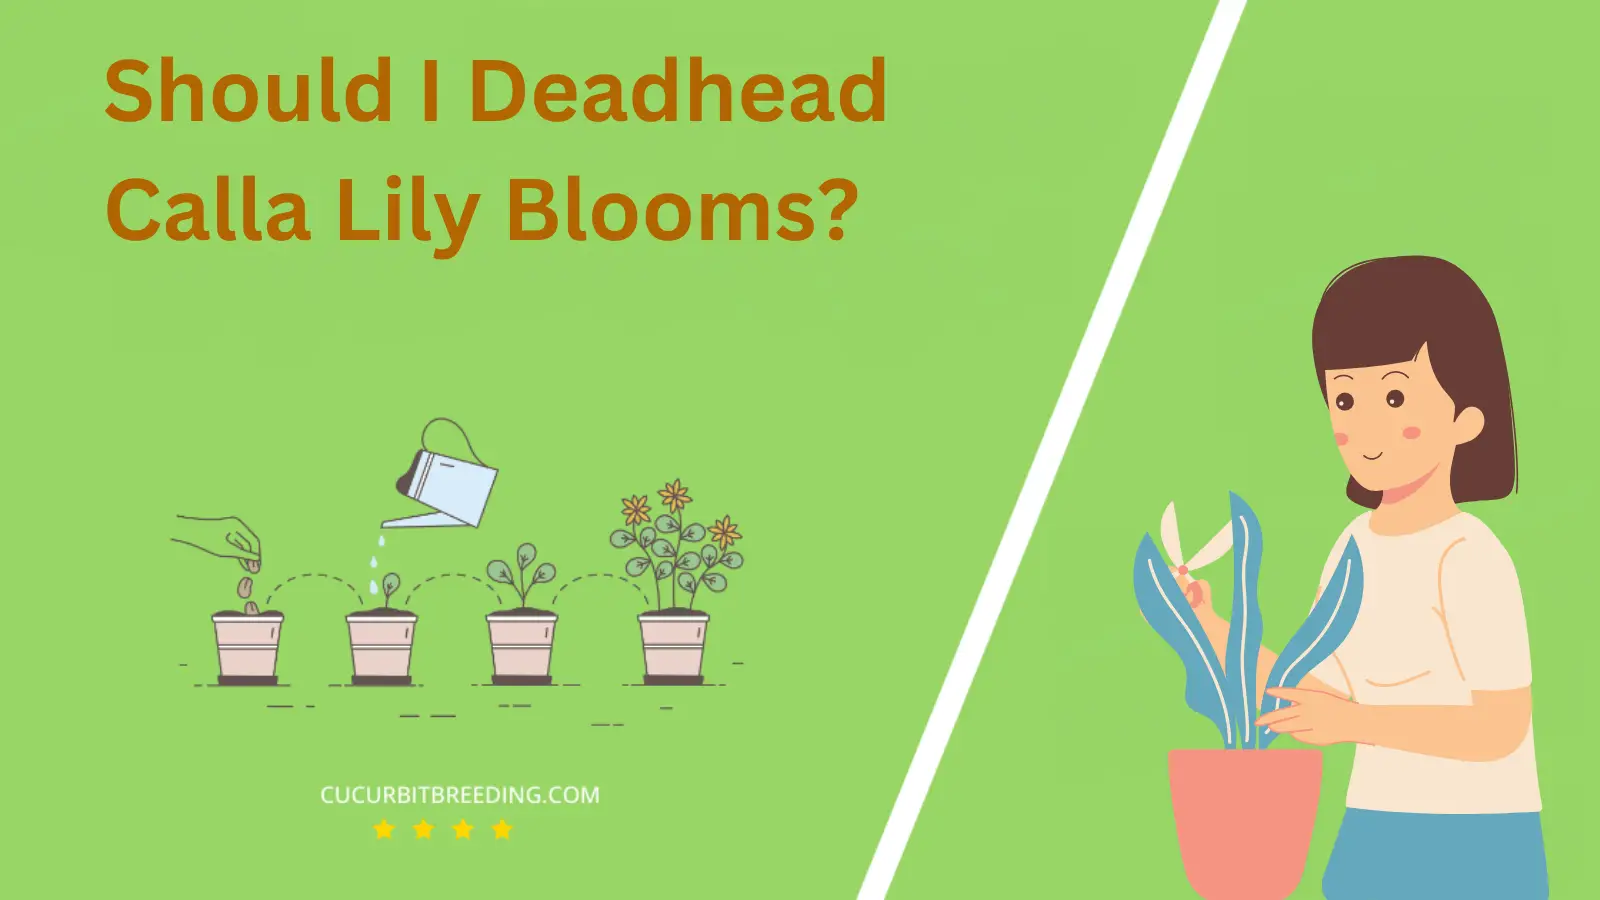 Should I Deadhead Calla Lily Blooms?